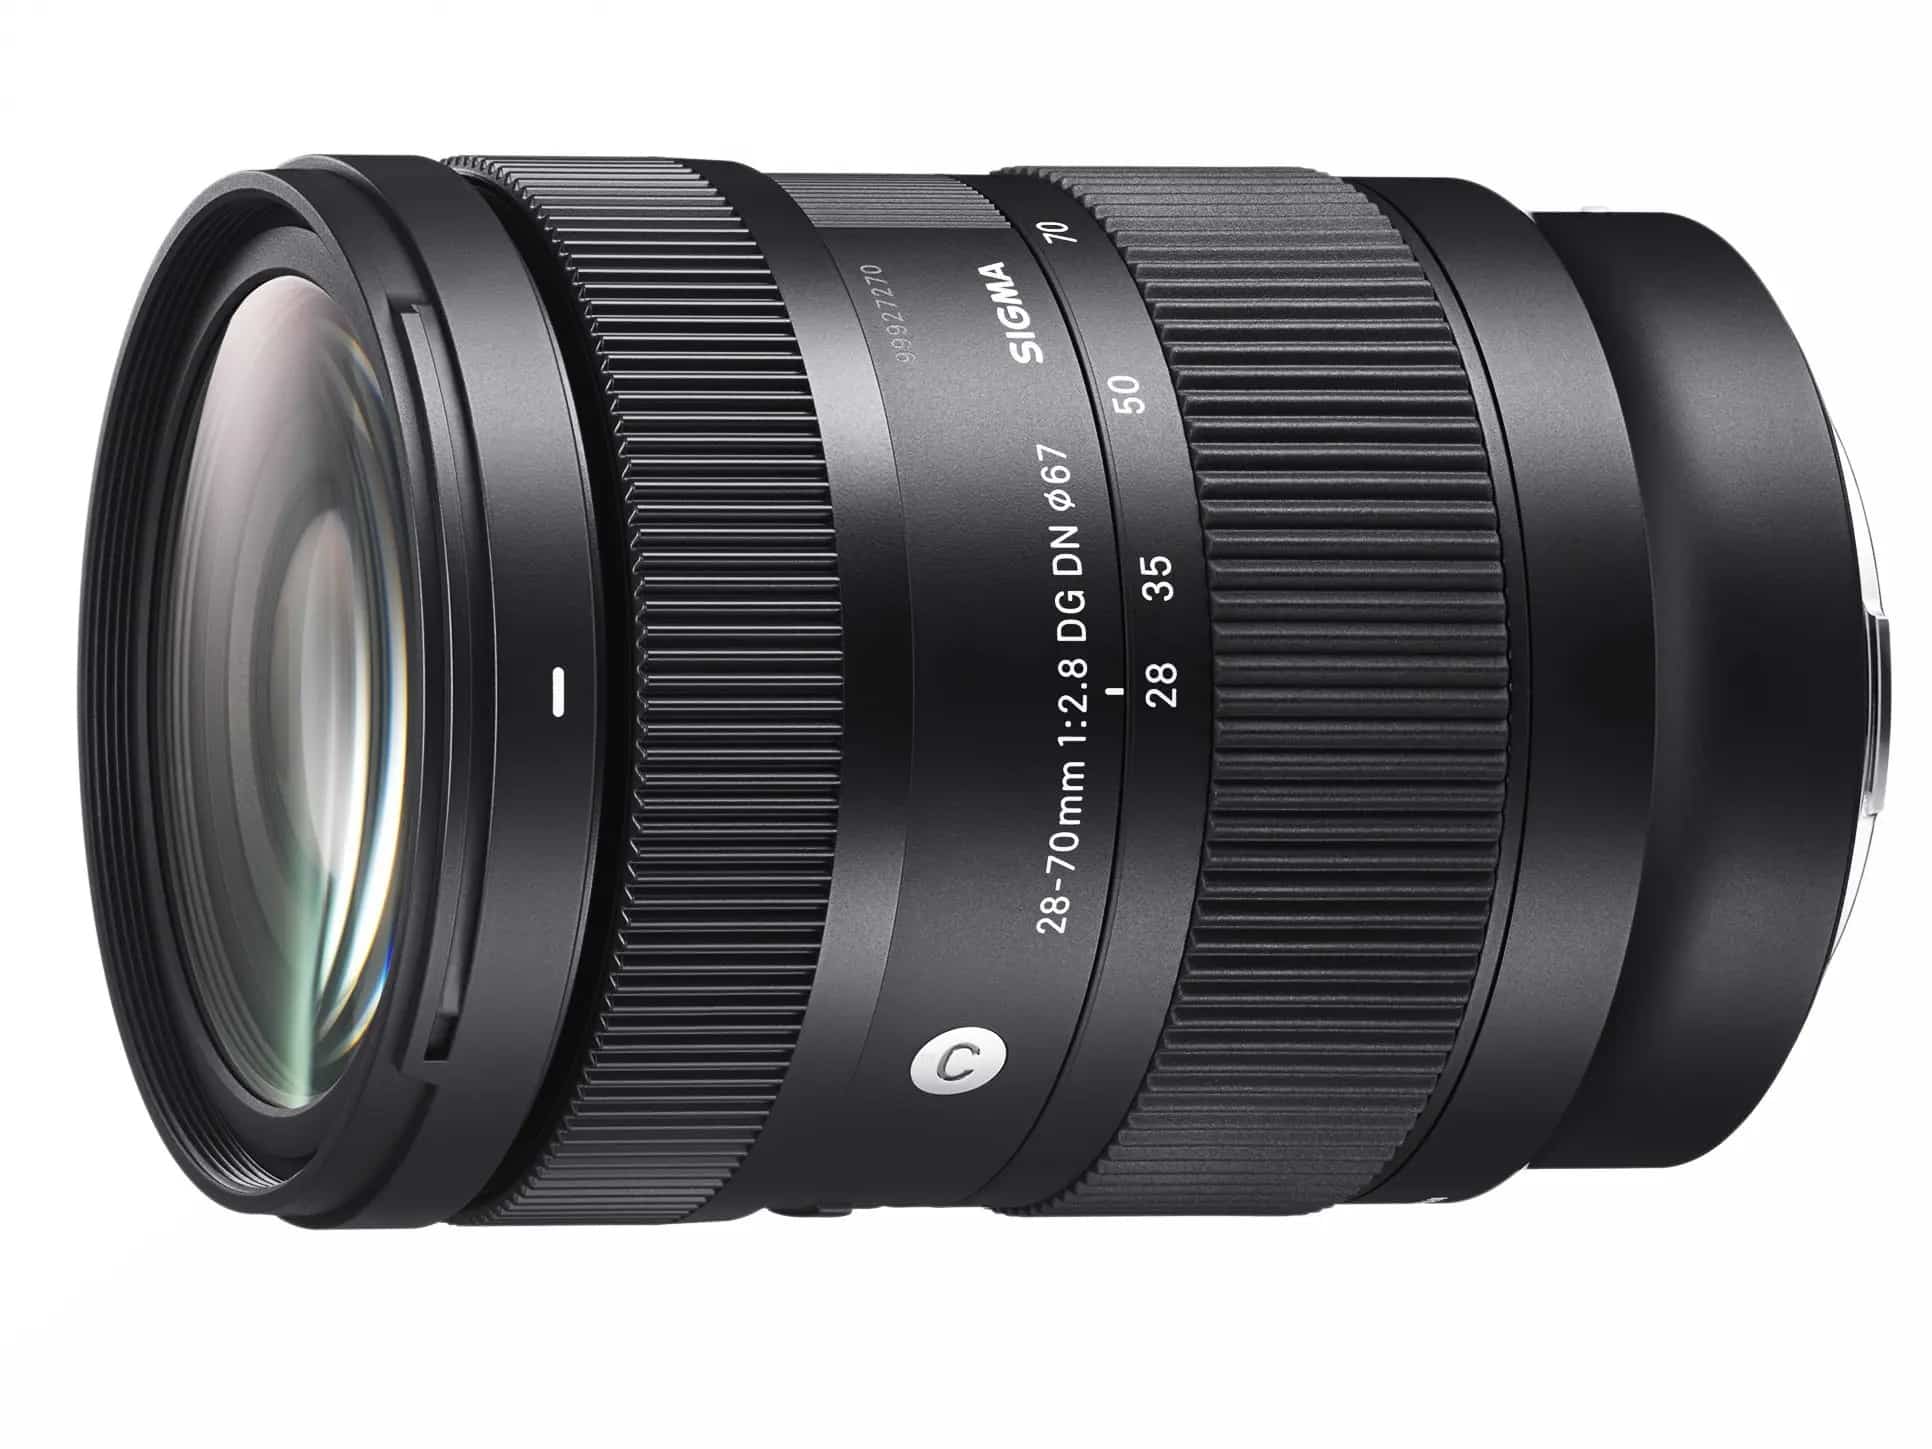 Ống kính Sigma 28-70mm F2.8 DG DN (C) cho Sony E và Leica L ra mắt, giá 20.490.000đ